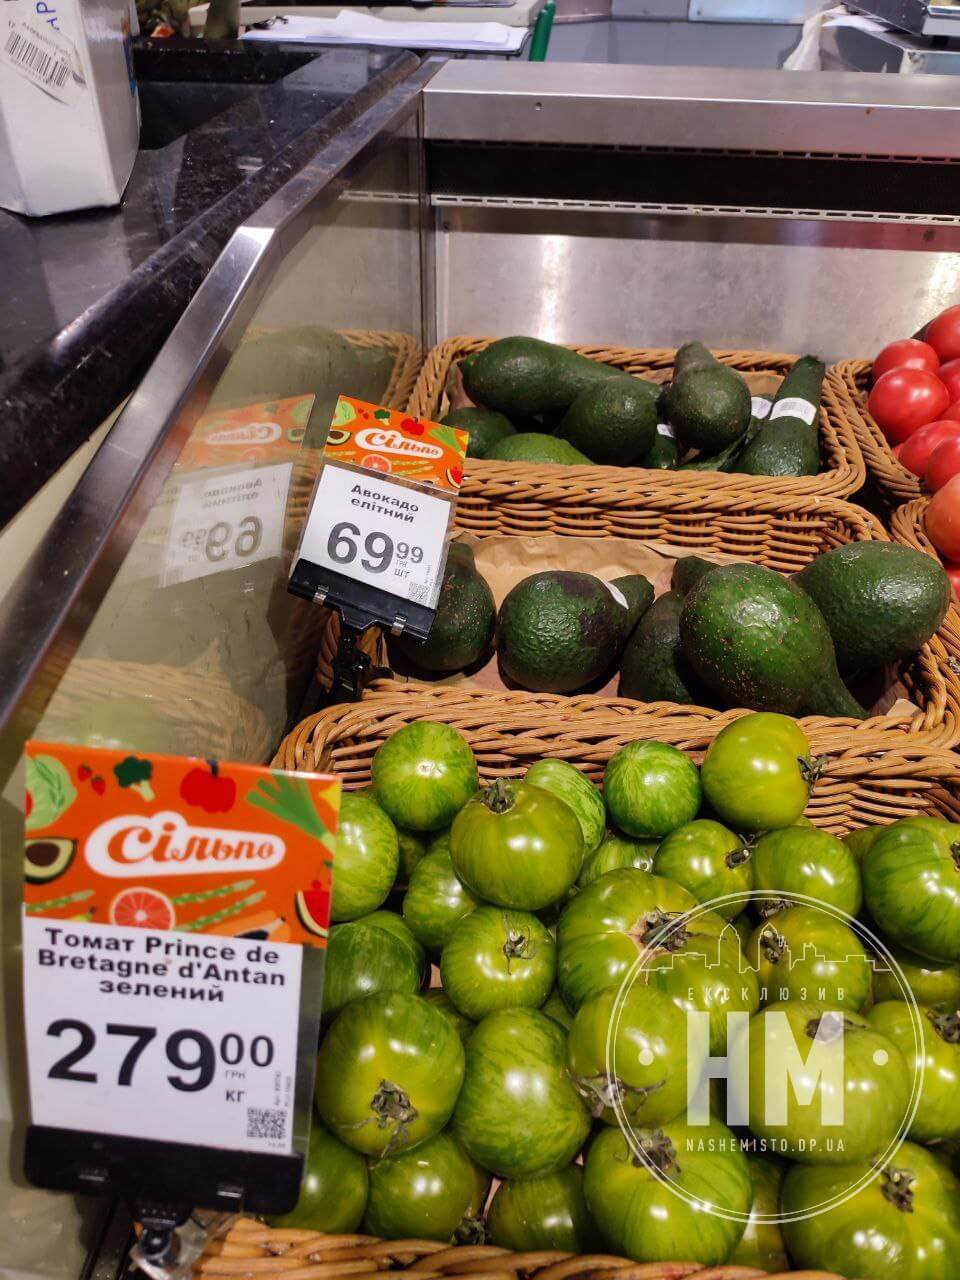 Зелені помідори продають майже за 300 грн за кілограм - Наше Місто